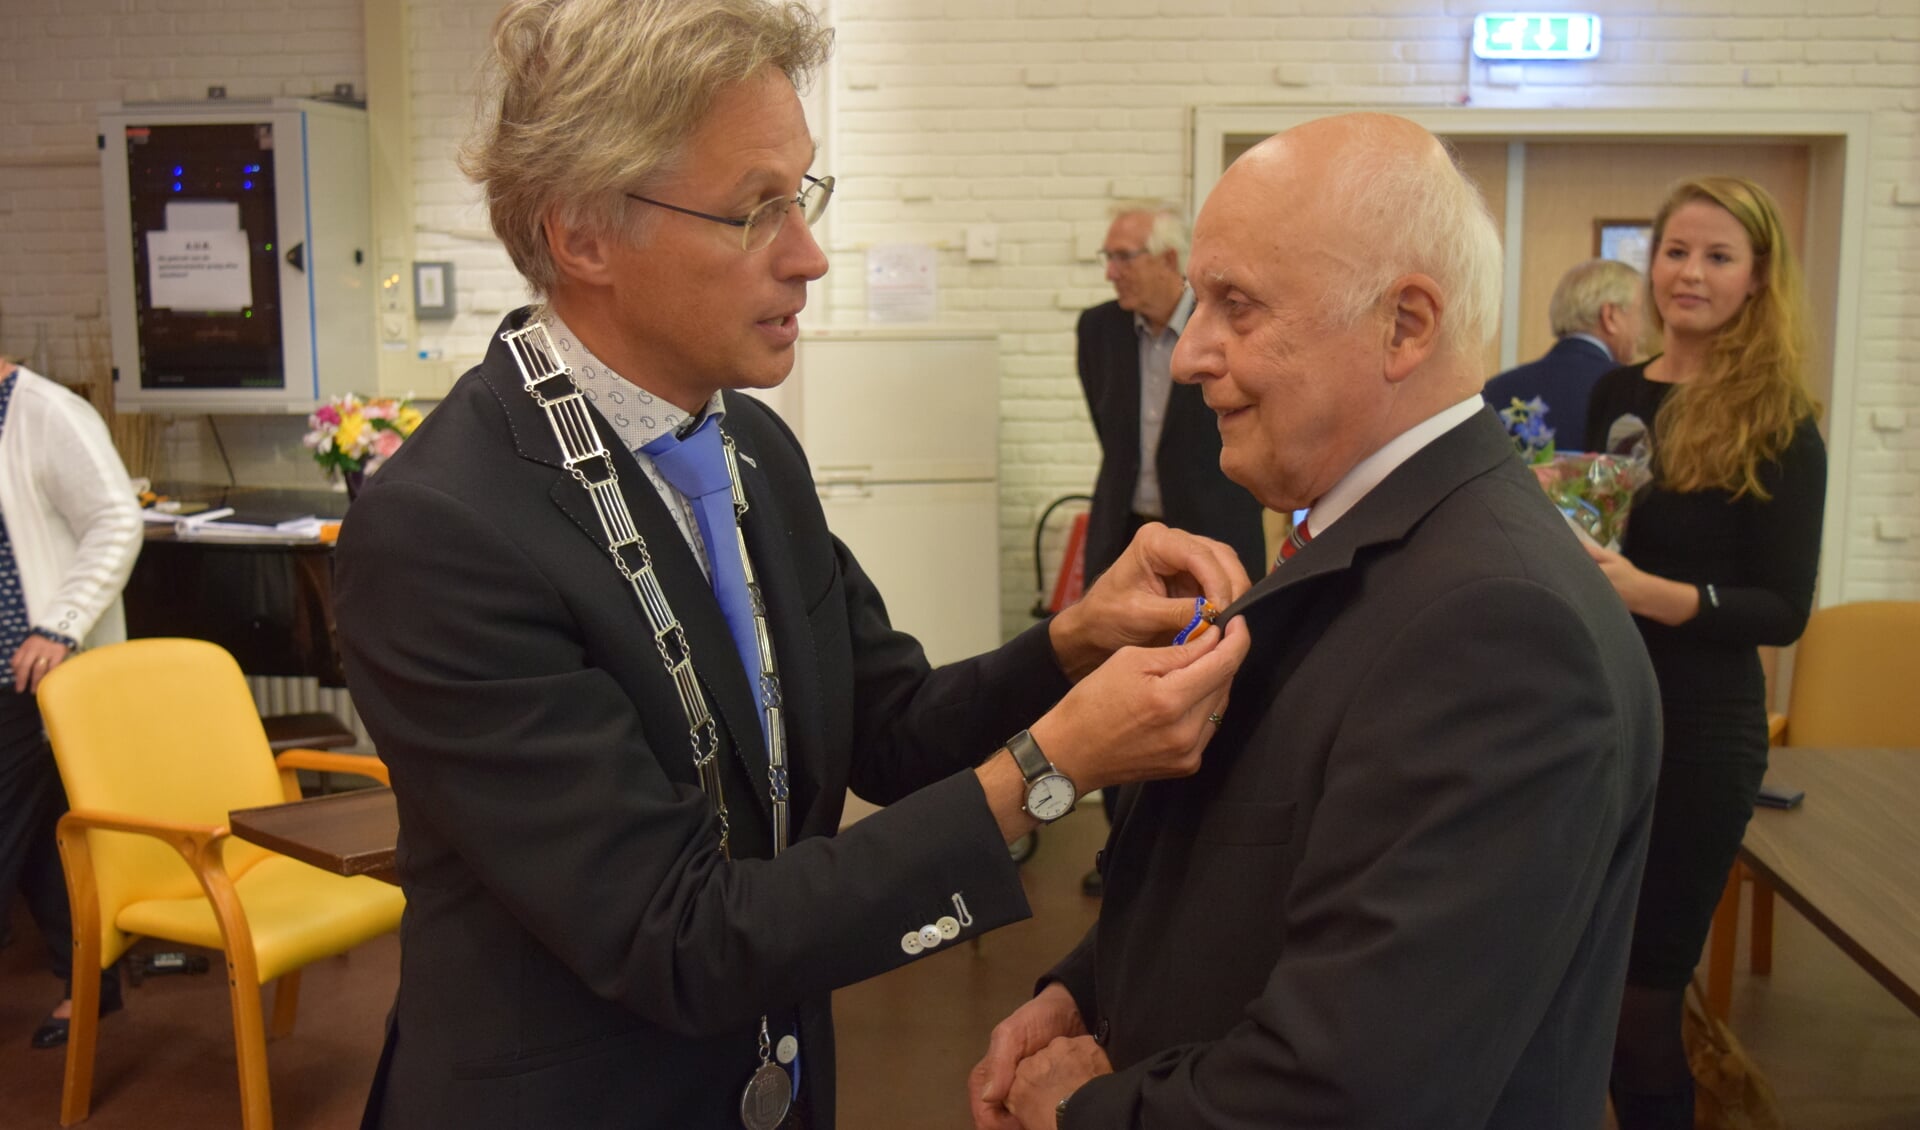  Locoburgemeester Hans Mieras speldt de Koninklijke Onderscheiding bij de heer Van der Linden op.